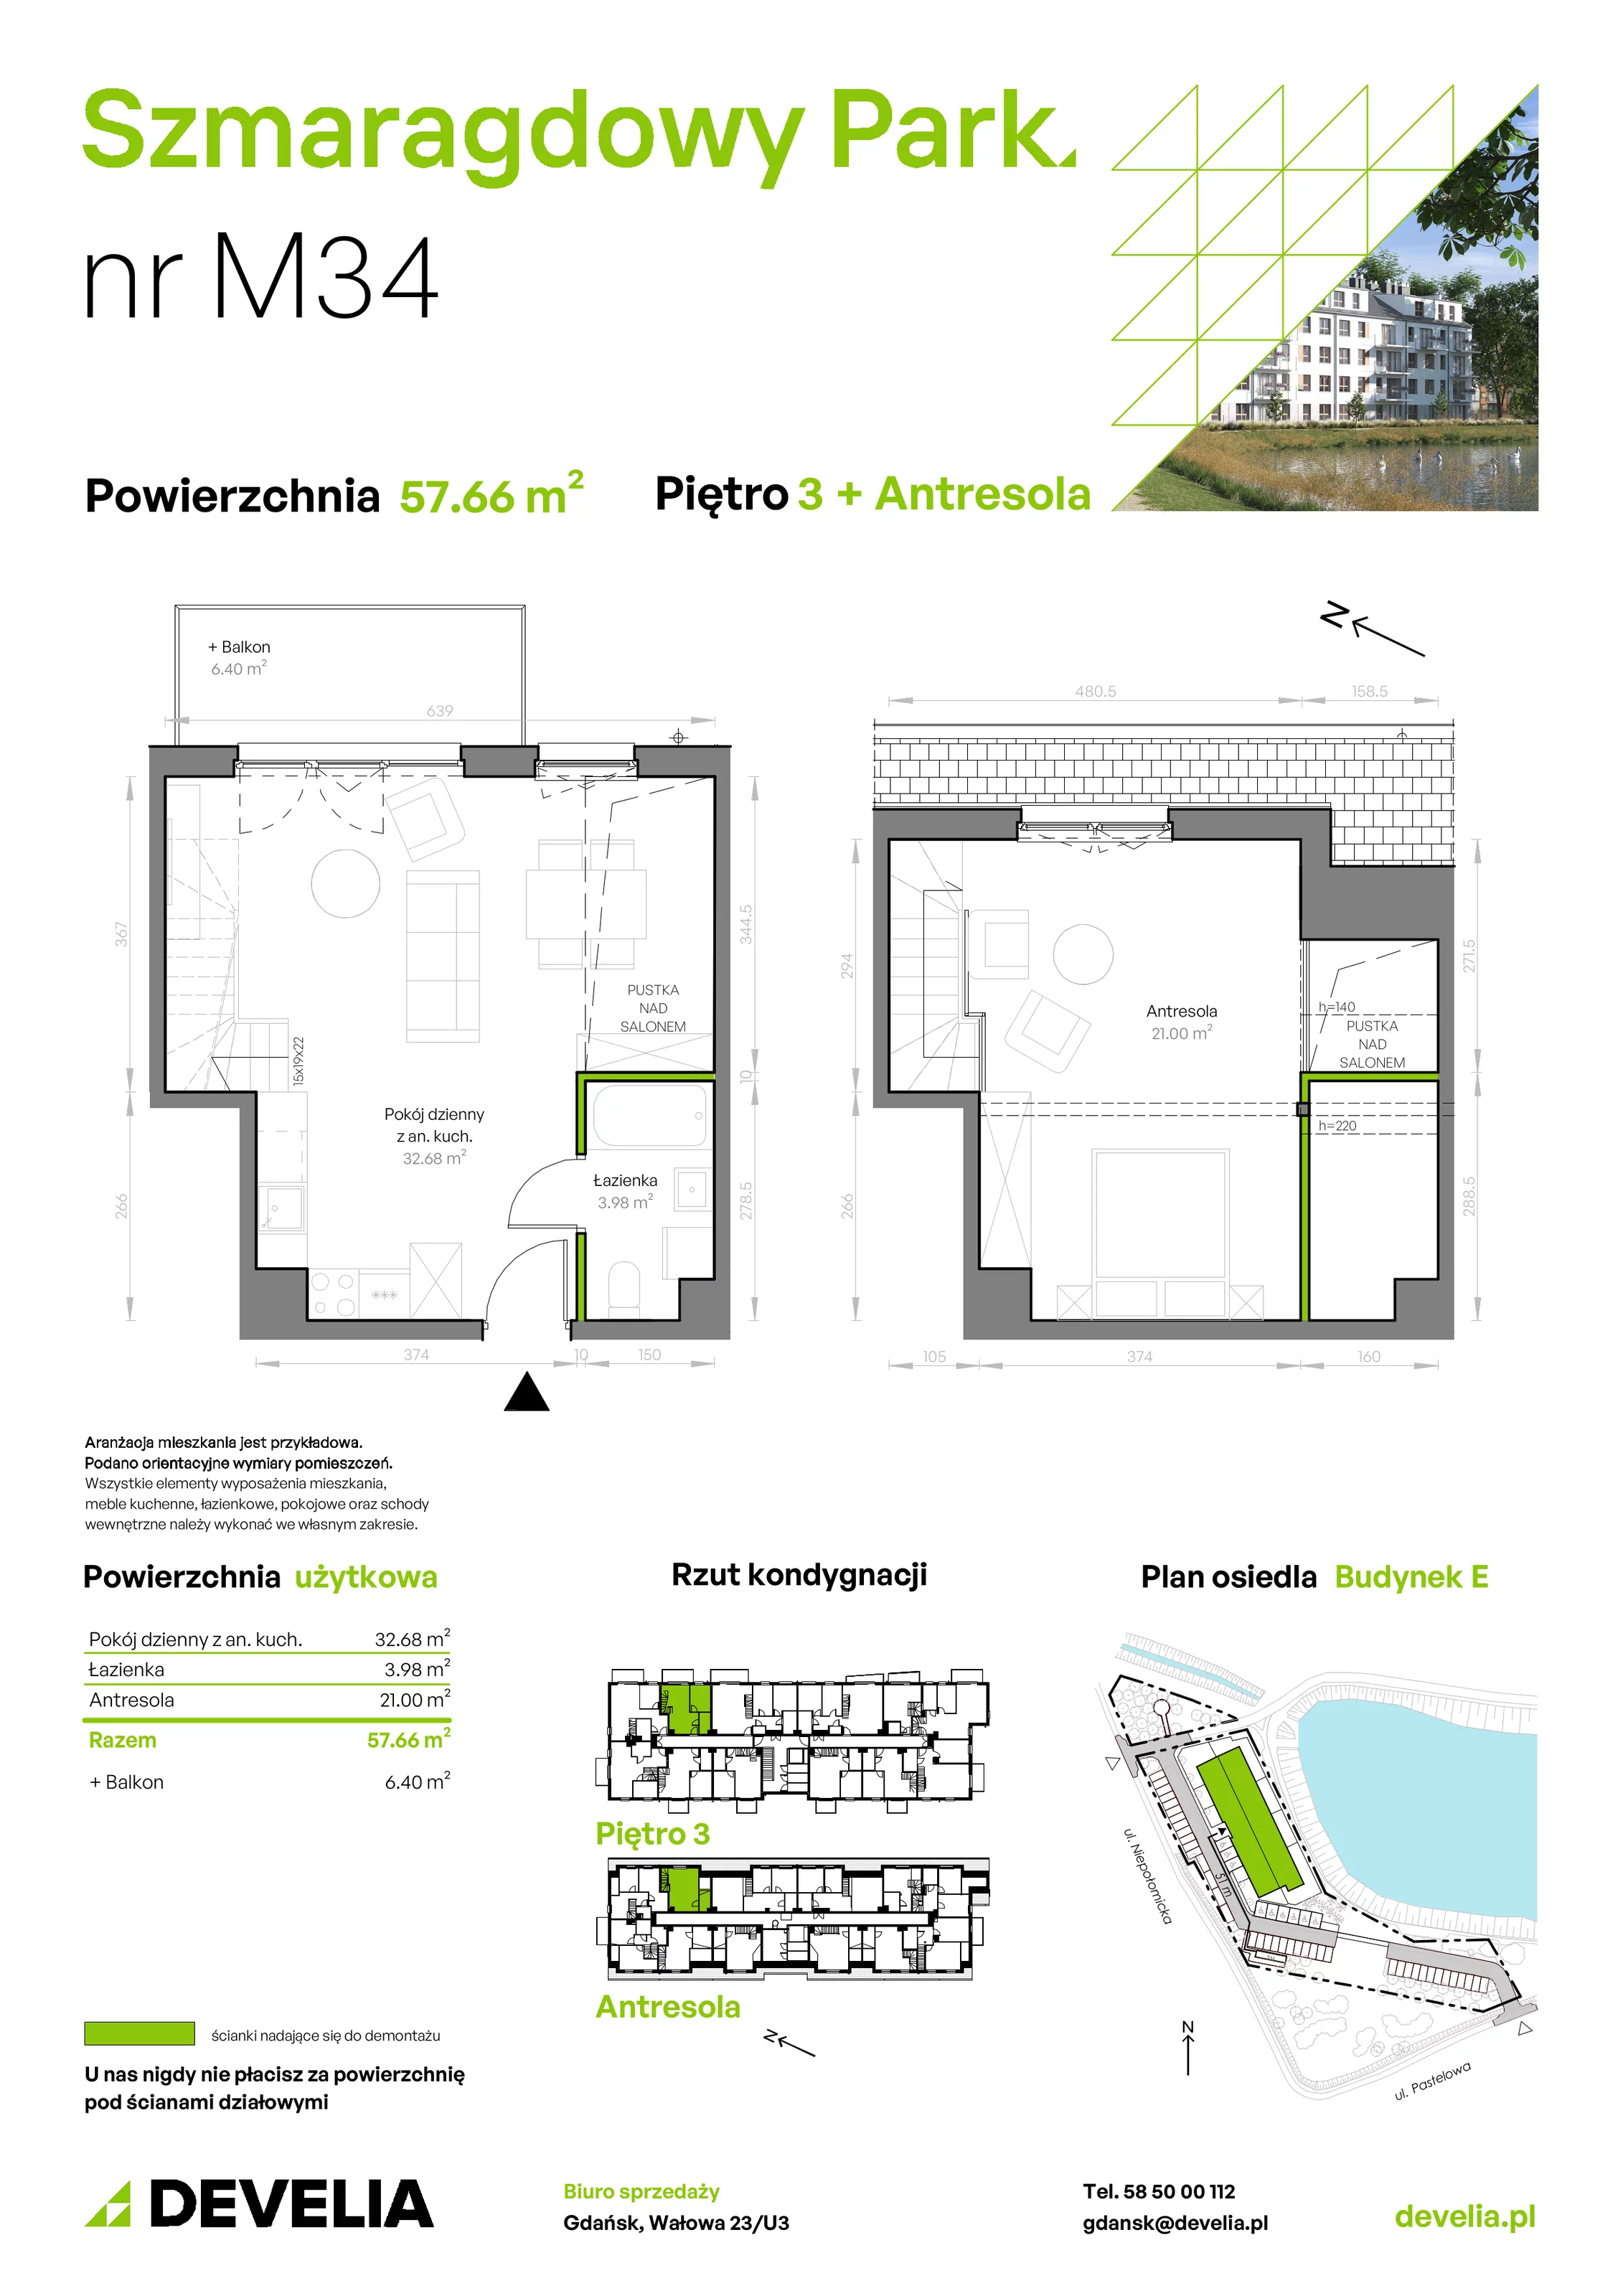 Mieszkanie 57,66 m², piętro 3, oferta nr E/034, Szmaragdowy Park, Gdańsk, Orunia Górna-Gdańsk Południe, Łostowice, ul. Topazowa 2